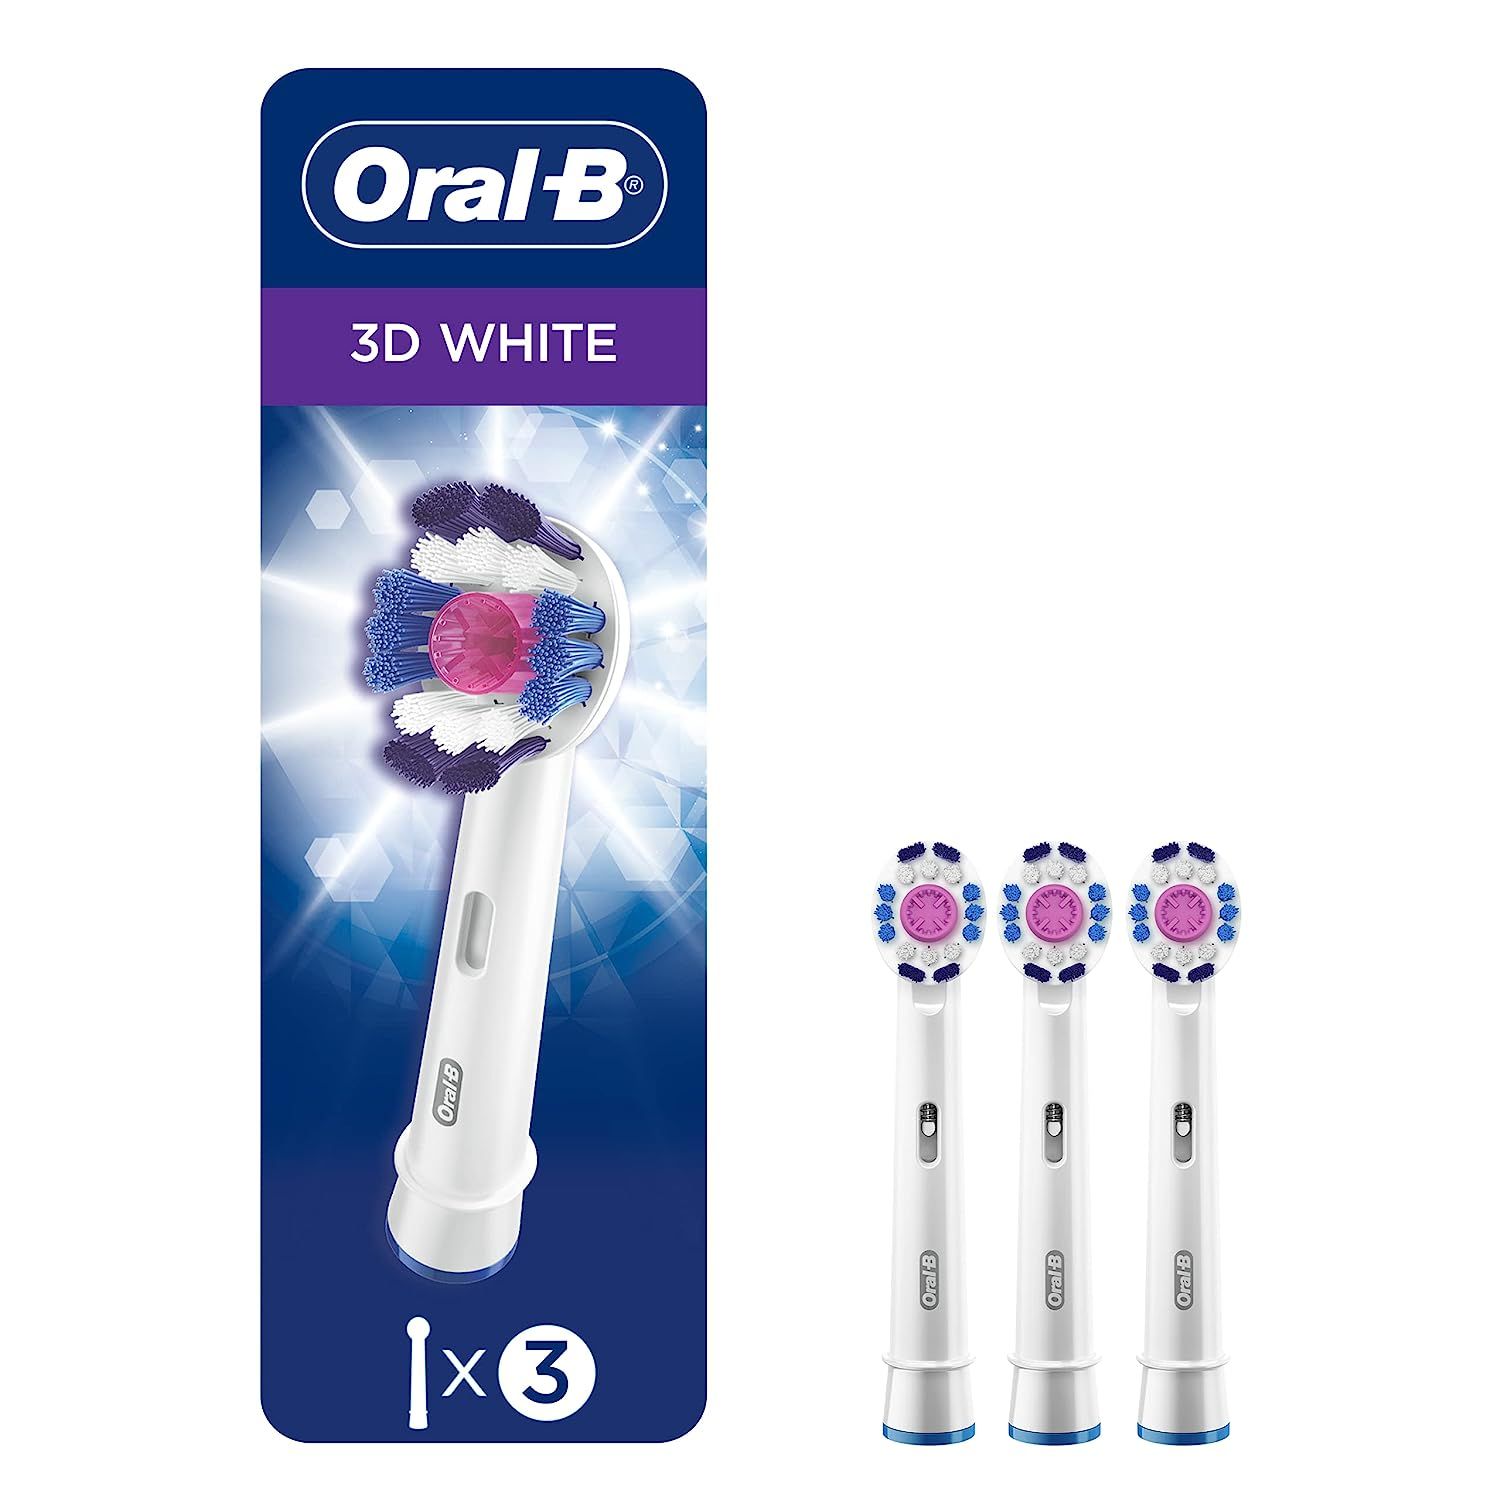  Đầu bàn chải điện Oral-B 3D White 